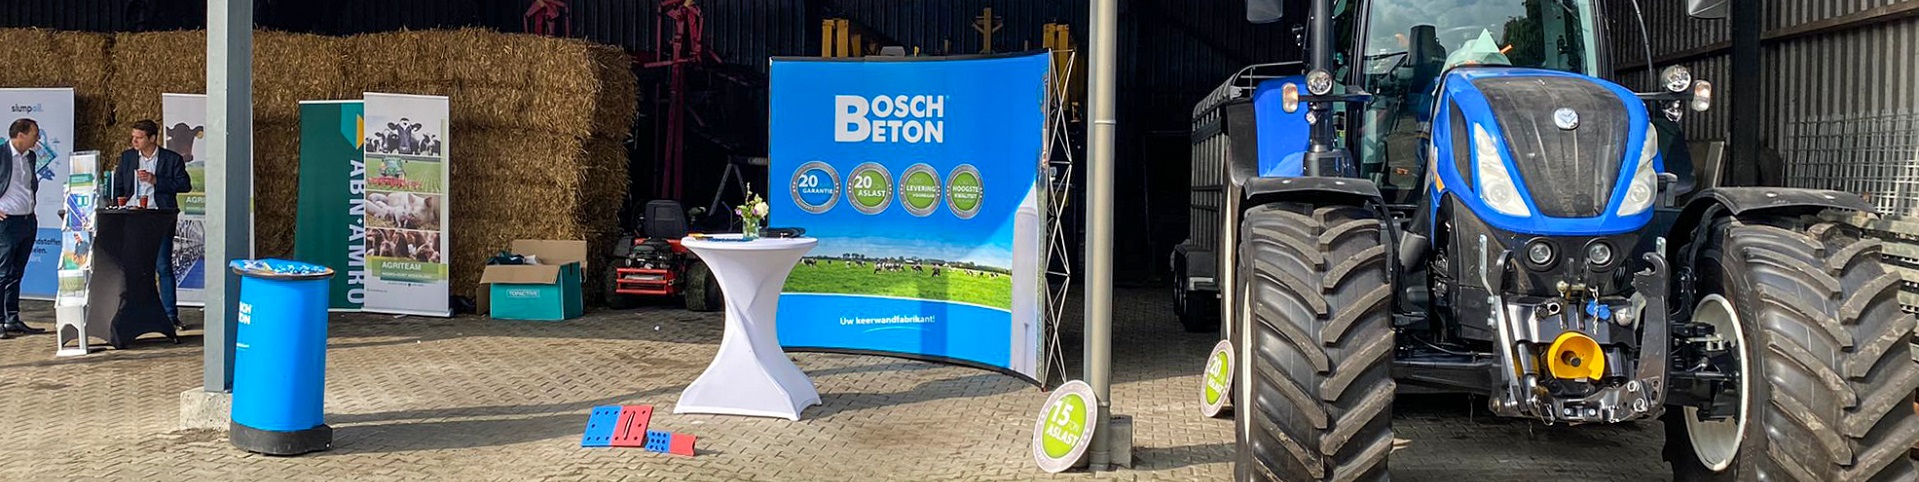 Bosch Beton is op 13 mei aanwezig op de open dag bij melkveebedrijf Lugtenberg in Heino.